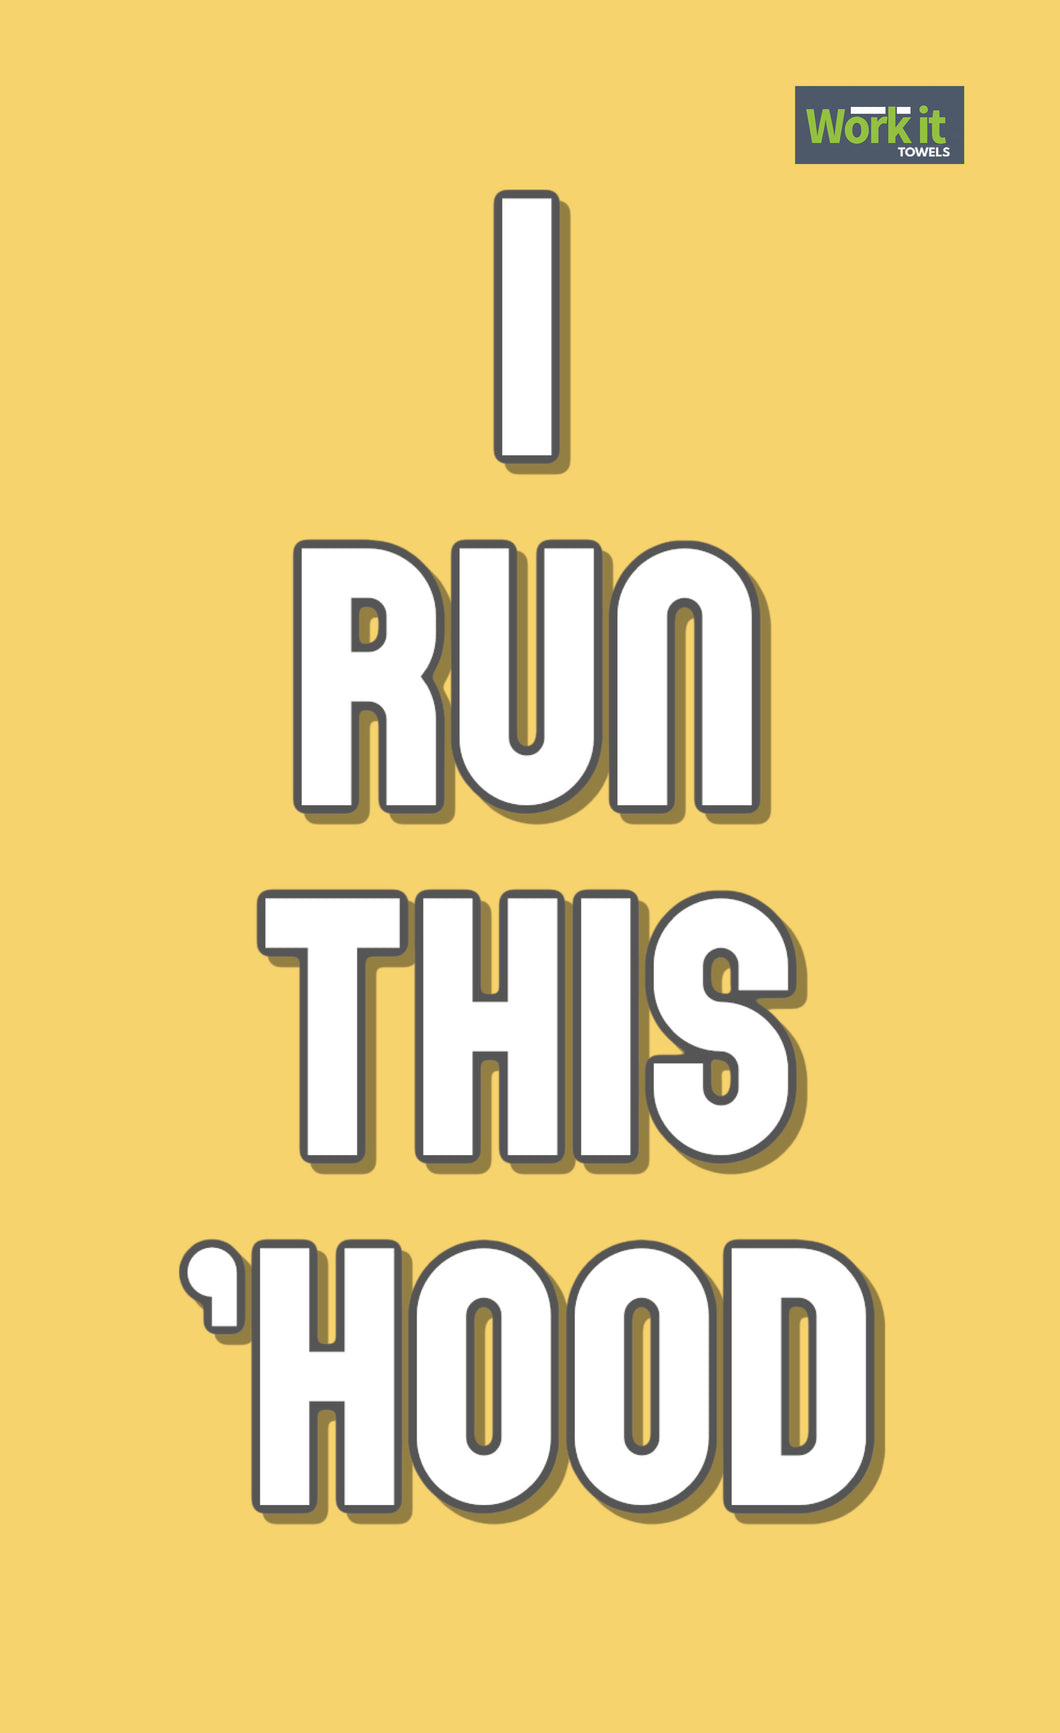 Run This Hood - work it towels